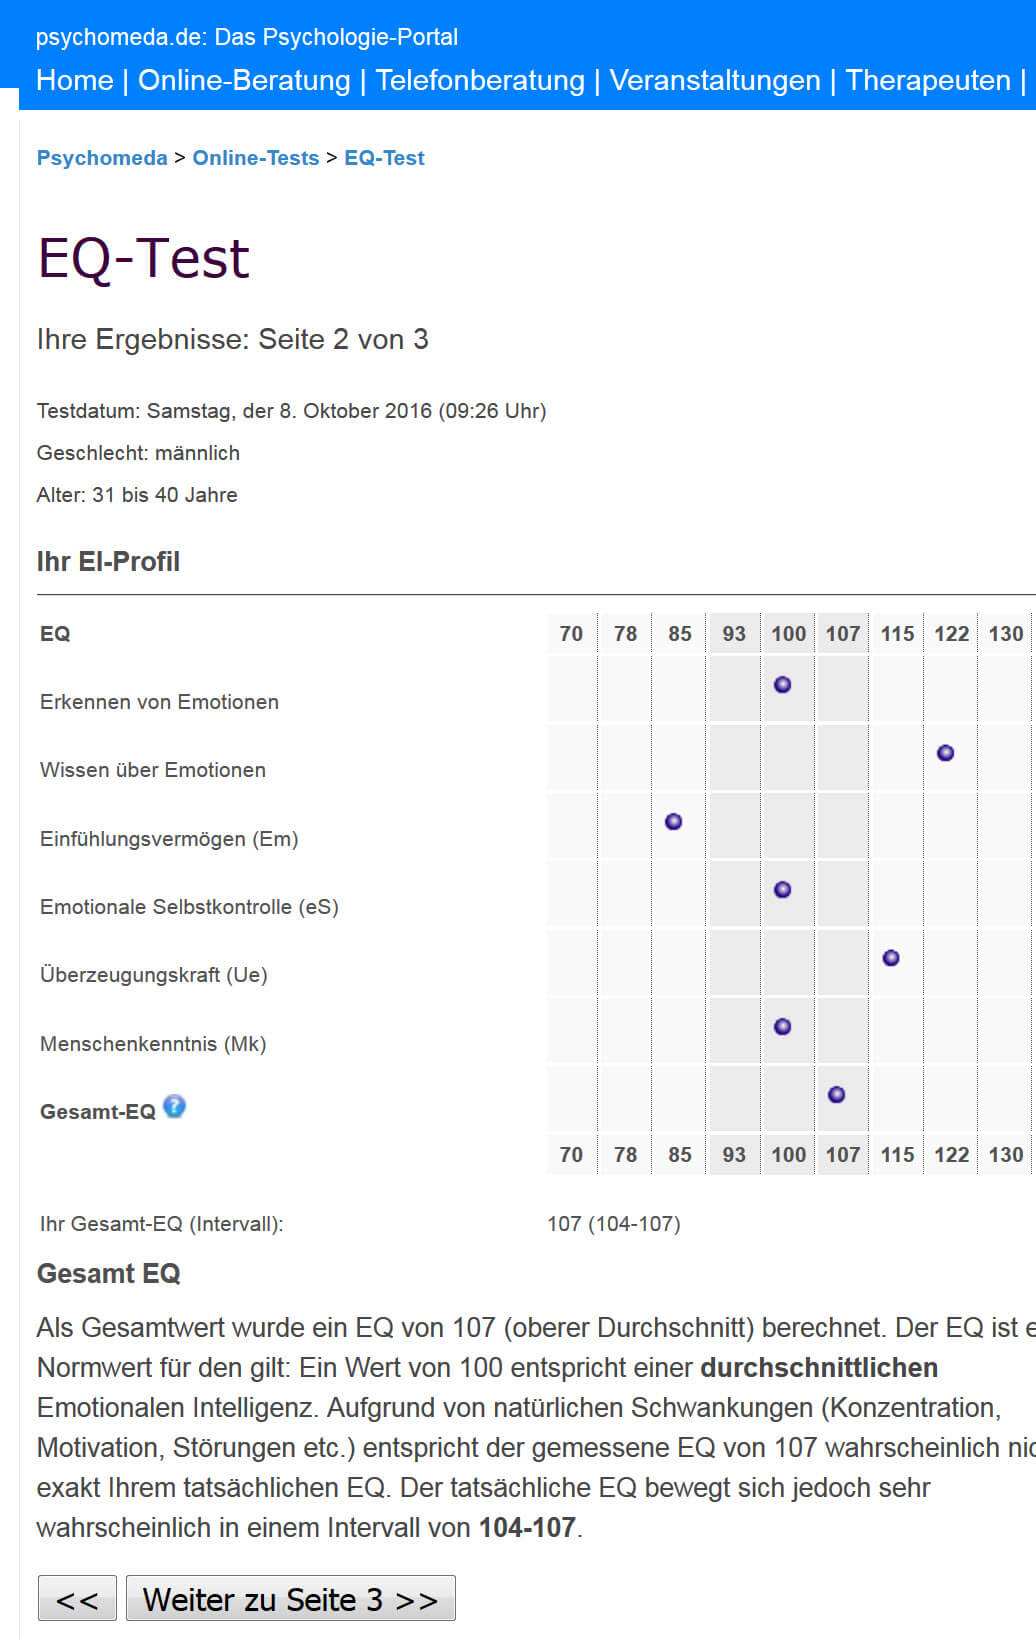 Emotionale Intelligenz Test (EQ-Test) unter www.psychomeda.de/online-tests/eq-test.html - Screenshot der Auswertung einer Beispieldurchführung am 08.10.2016